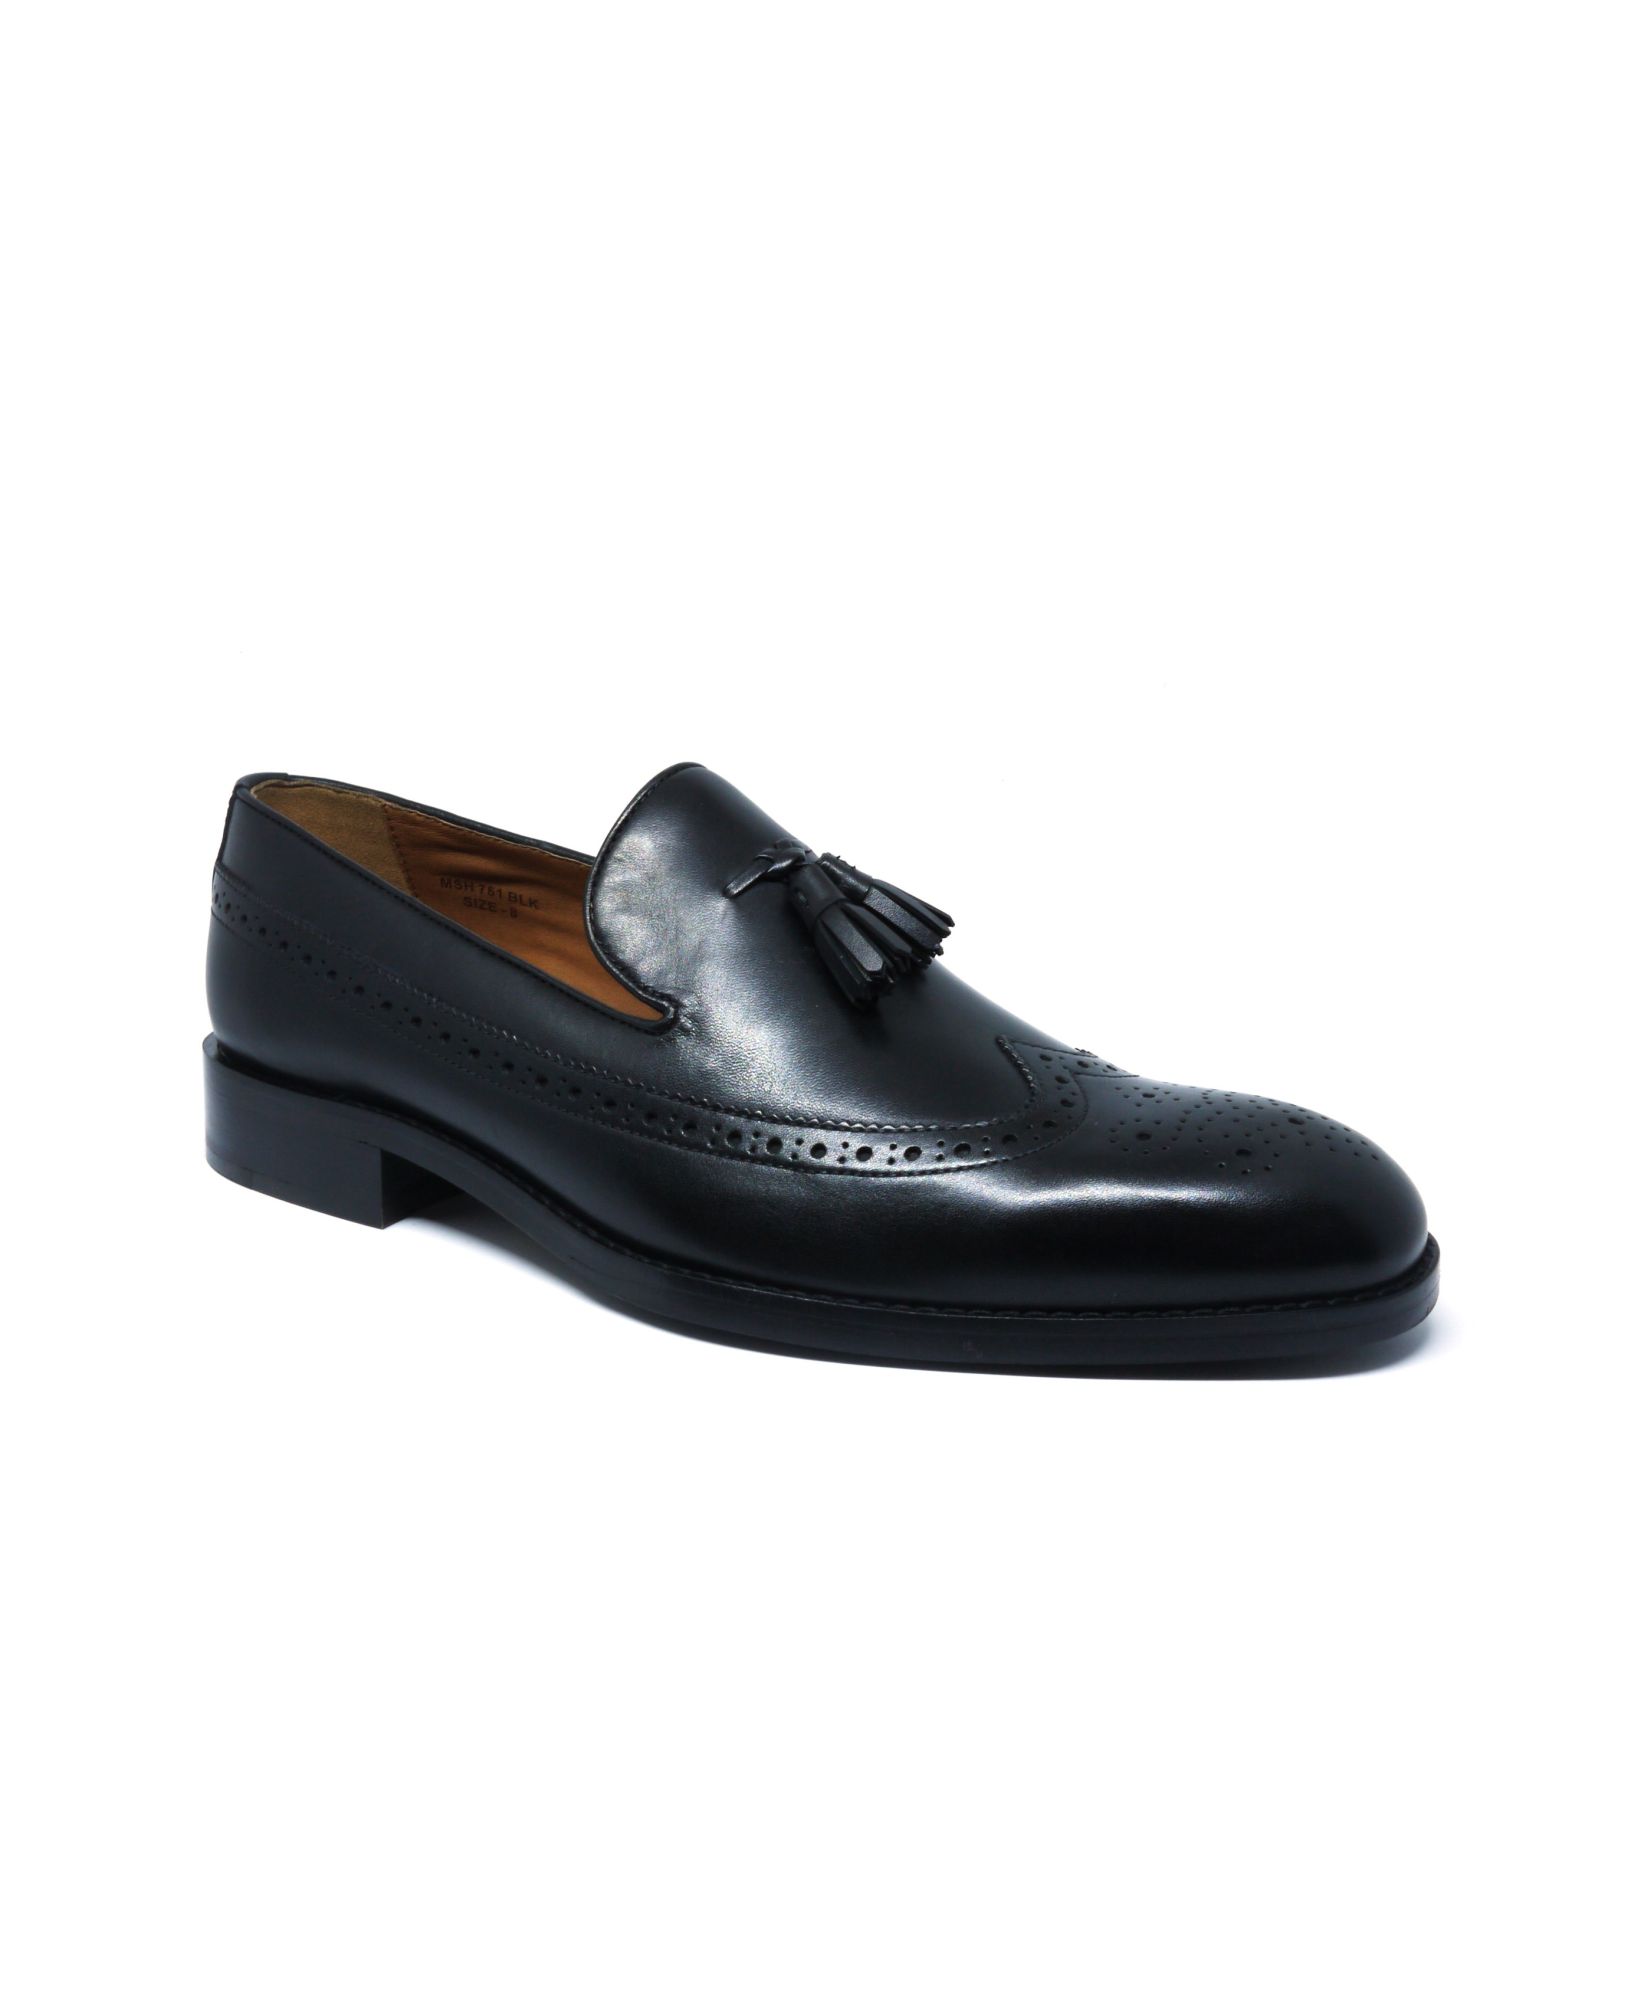 Black Leather Tasselled Loafers 10